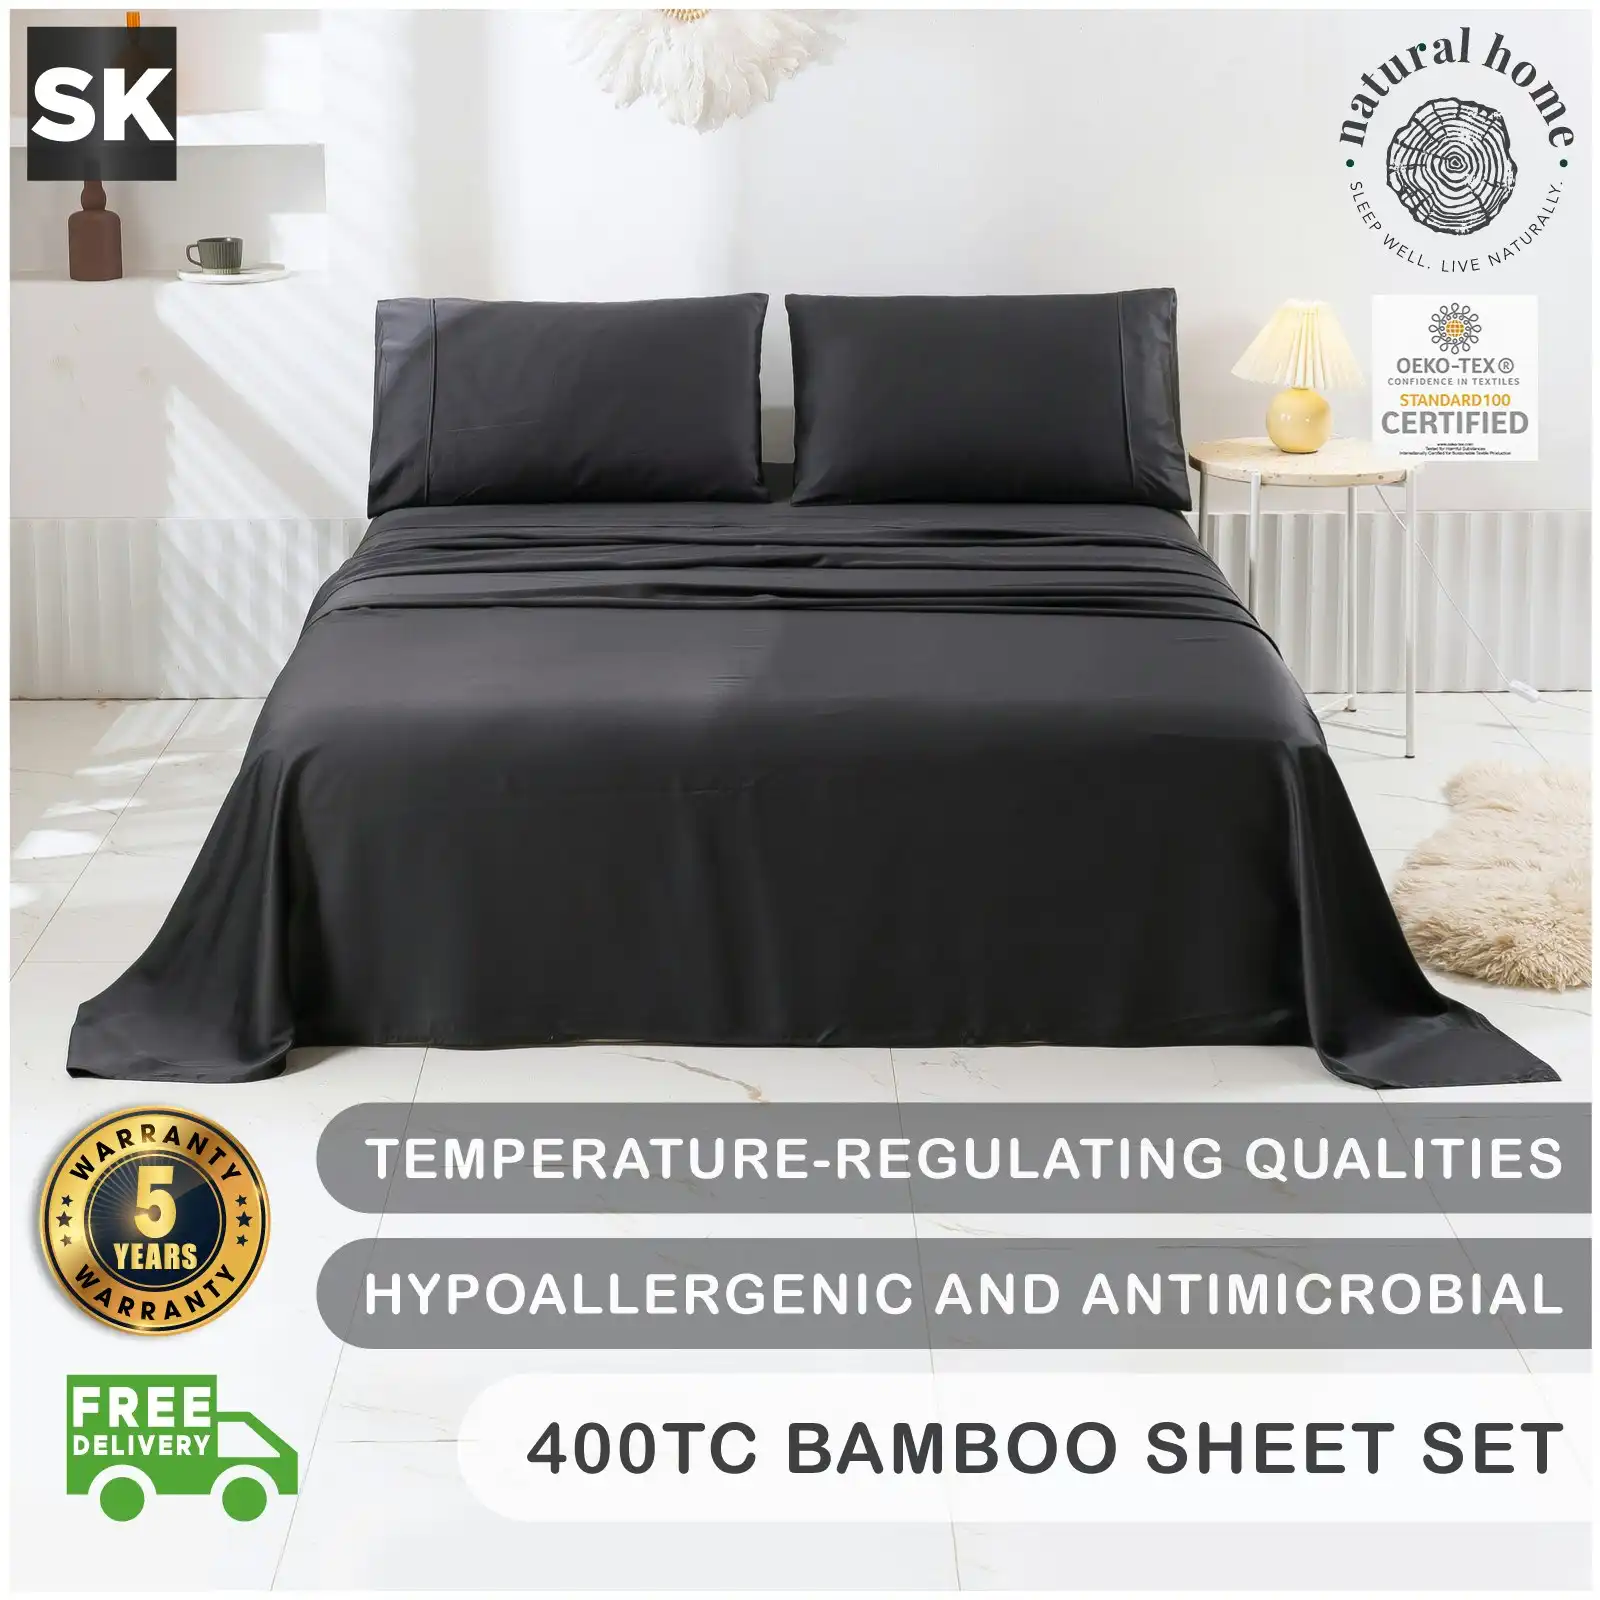 Natural Home Bamboo Sheet Set Charcoal Super King Bed